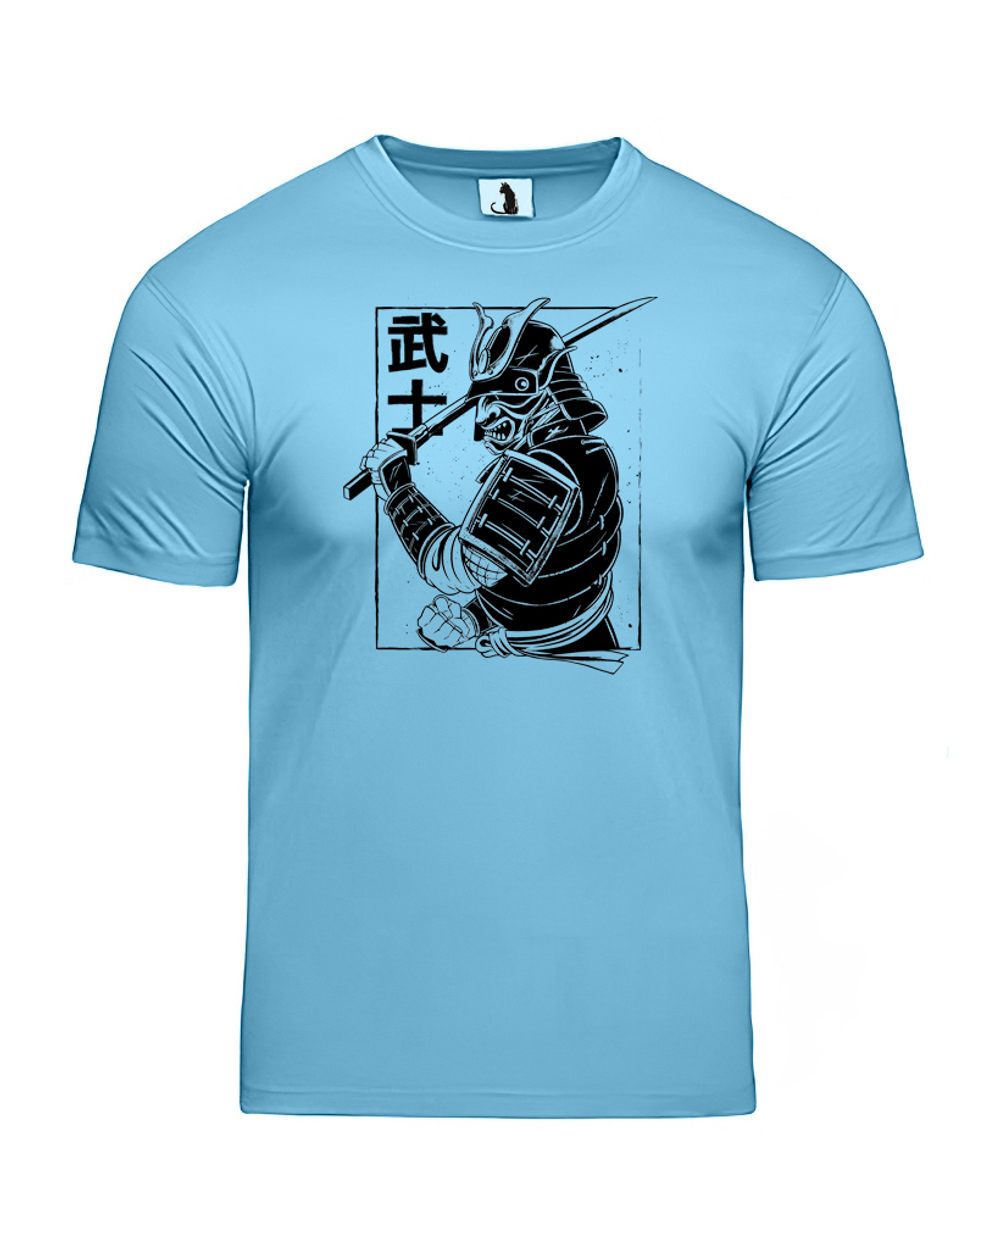 Футболка с самураем мужская голубая с черным рисунком